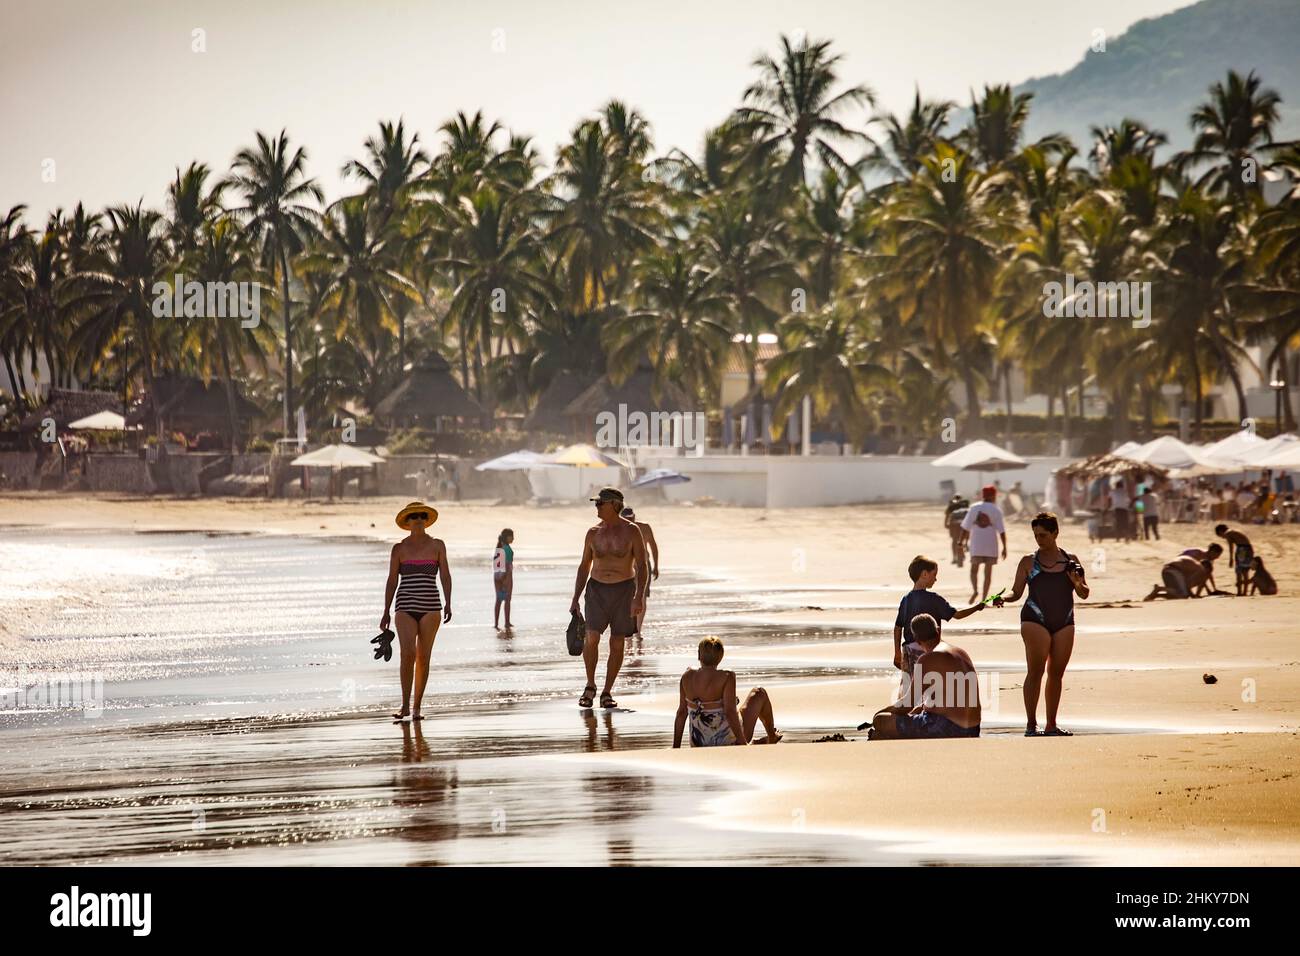 Manzanillo beach. Pacific Ocean. Colima. Mexico, North America Stock Photo